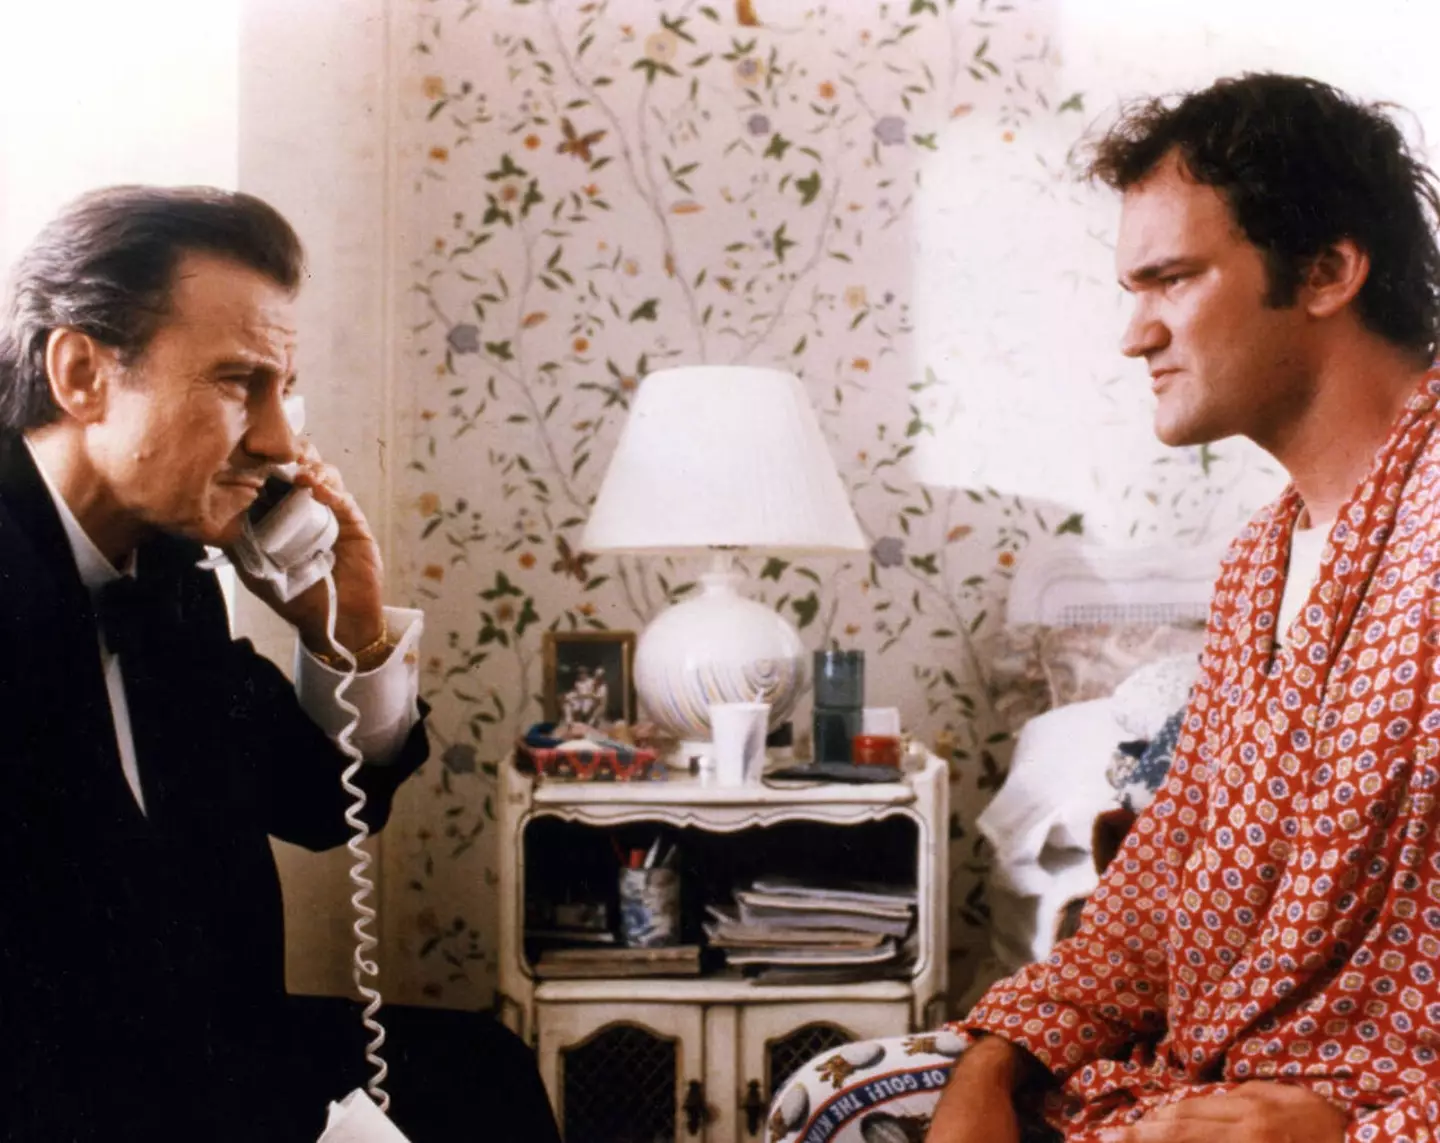 Tarantino and Harvey Keitel in Pulp Fiction.